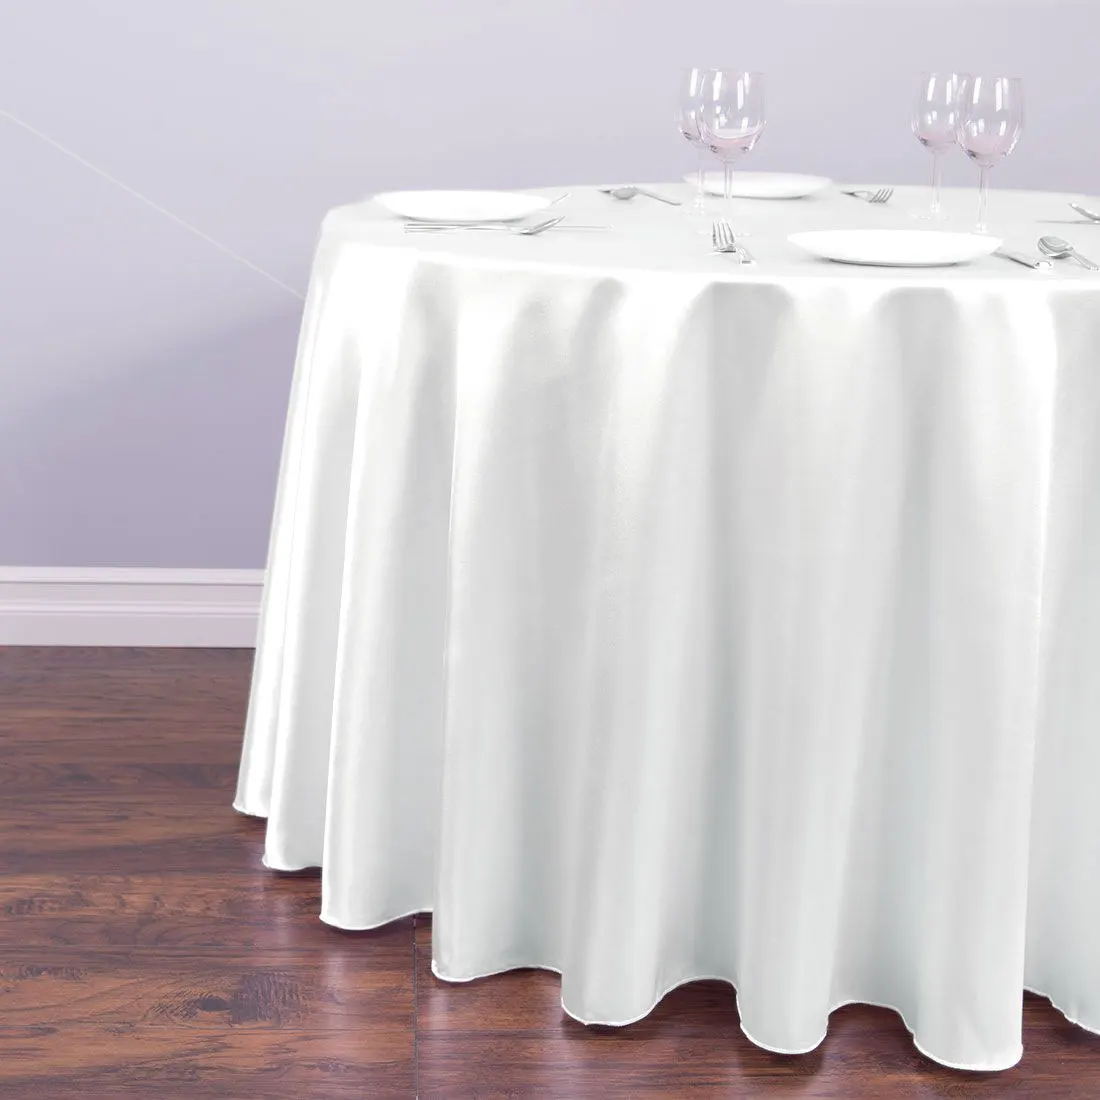 Круглые атласные скатерти на банкетный стол обеденный стол постельное белье для дома вечерние мероприятие Отель Свадьба День Рождения вечерние украшения - Цвет: white